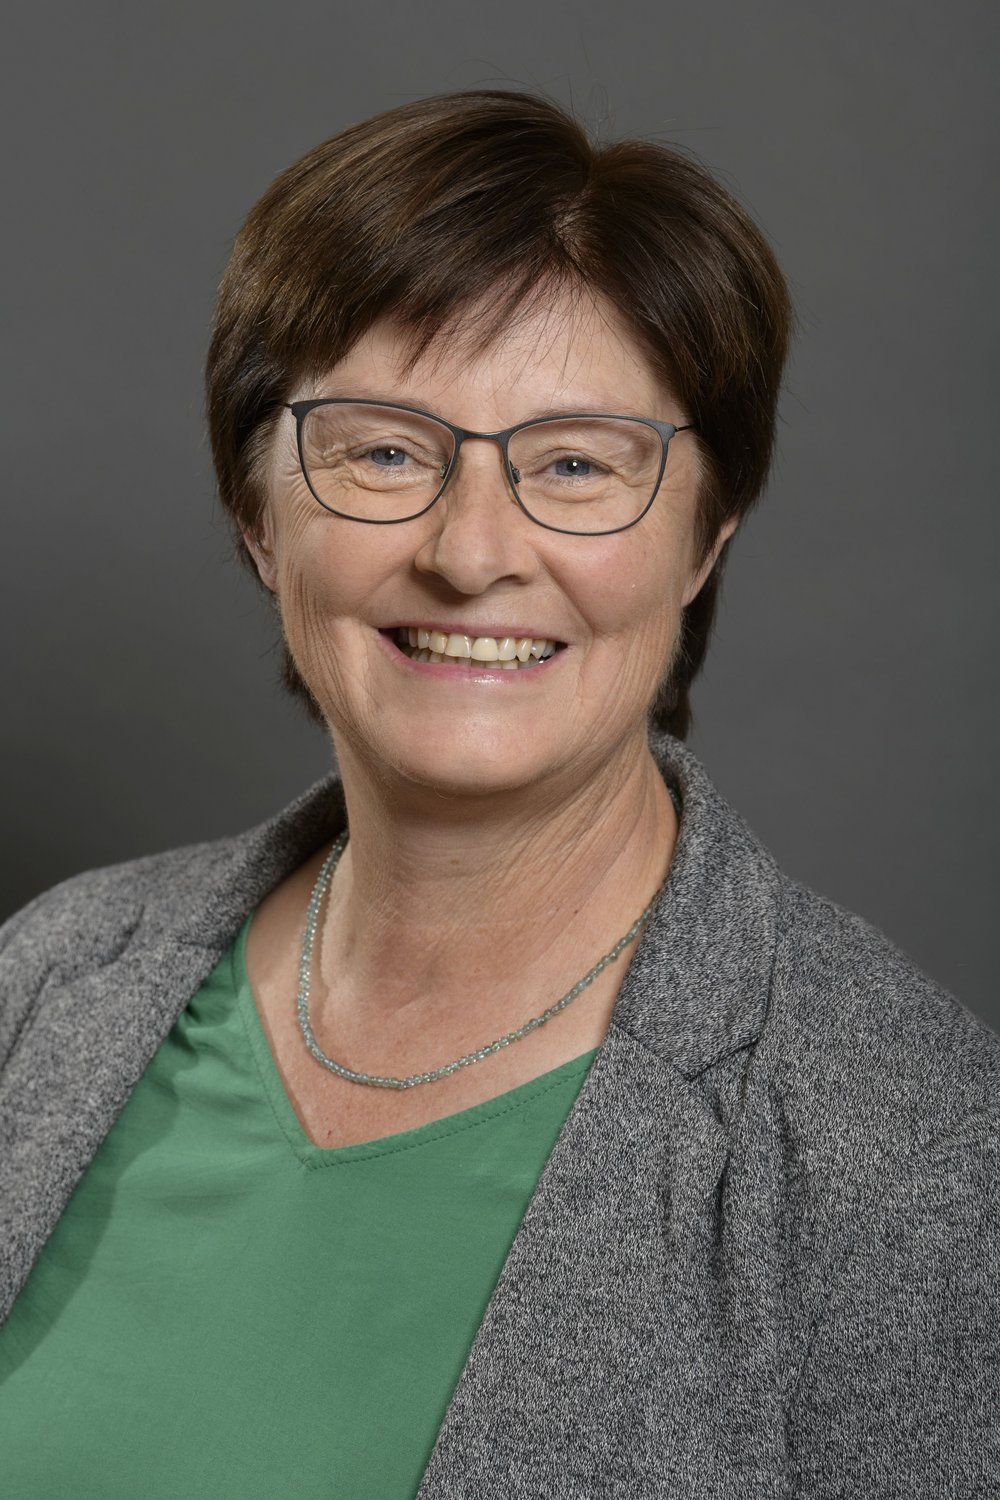 Rosi Steinberger ist Abgeordnete für Bündnis 90/Die Grünen im bayerischen Landtag